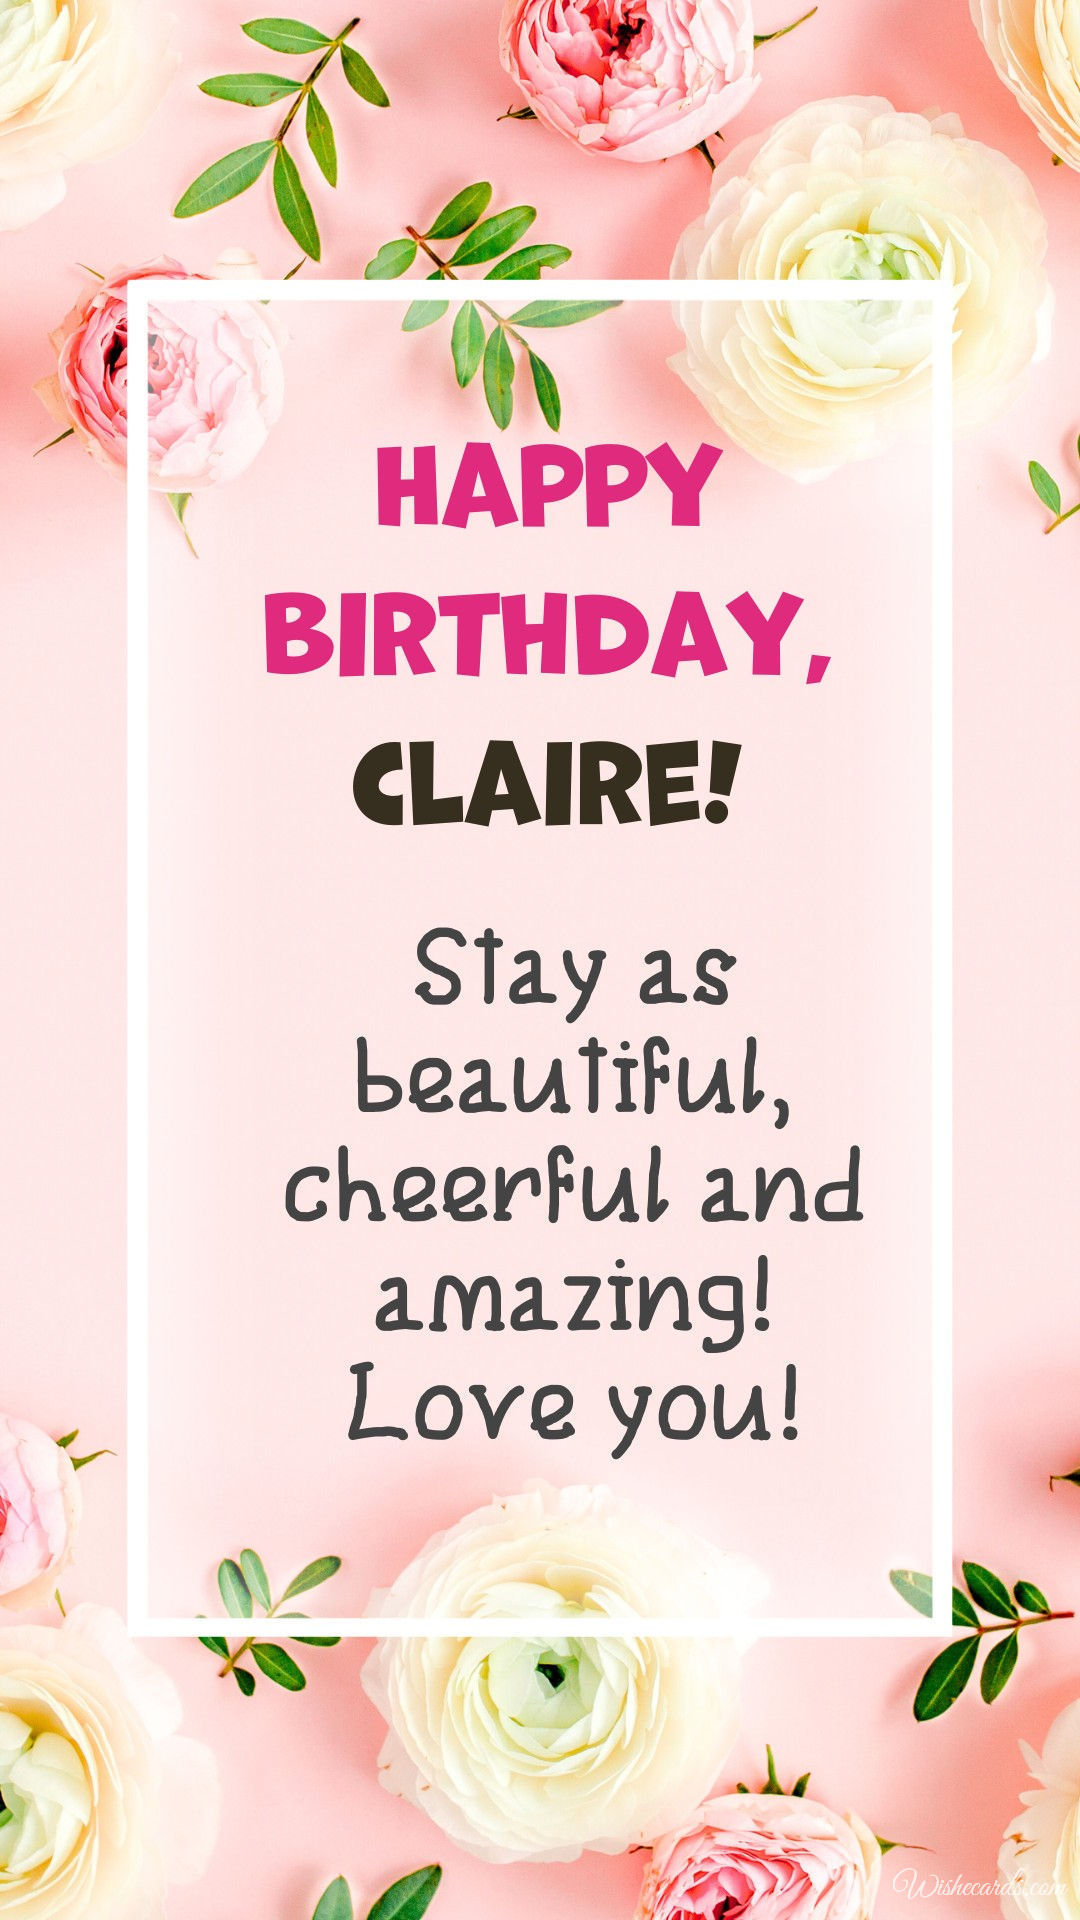 Happy Birthday Claire Image